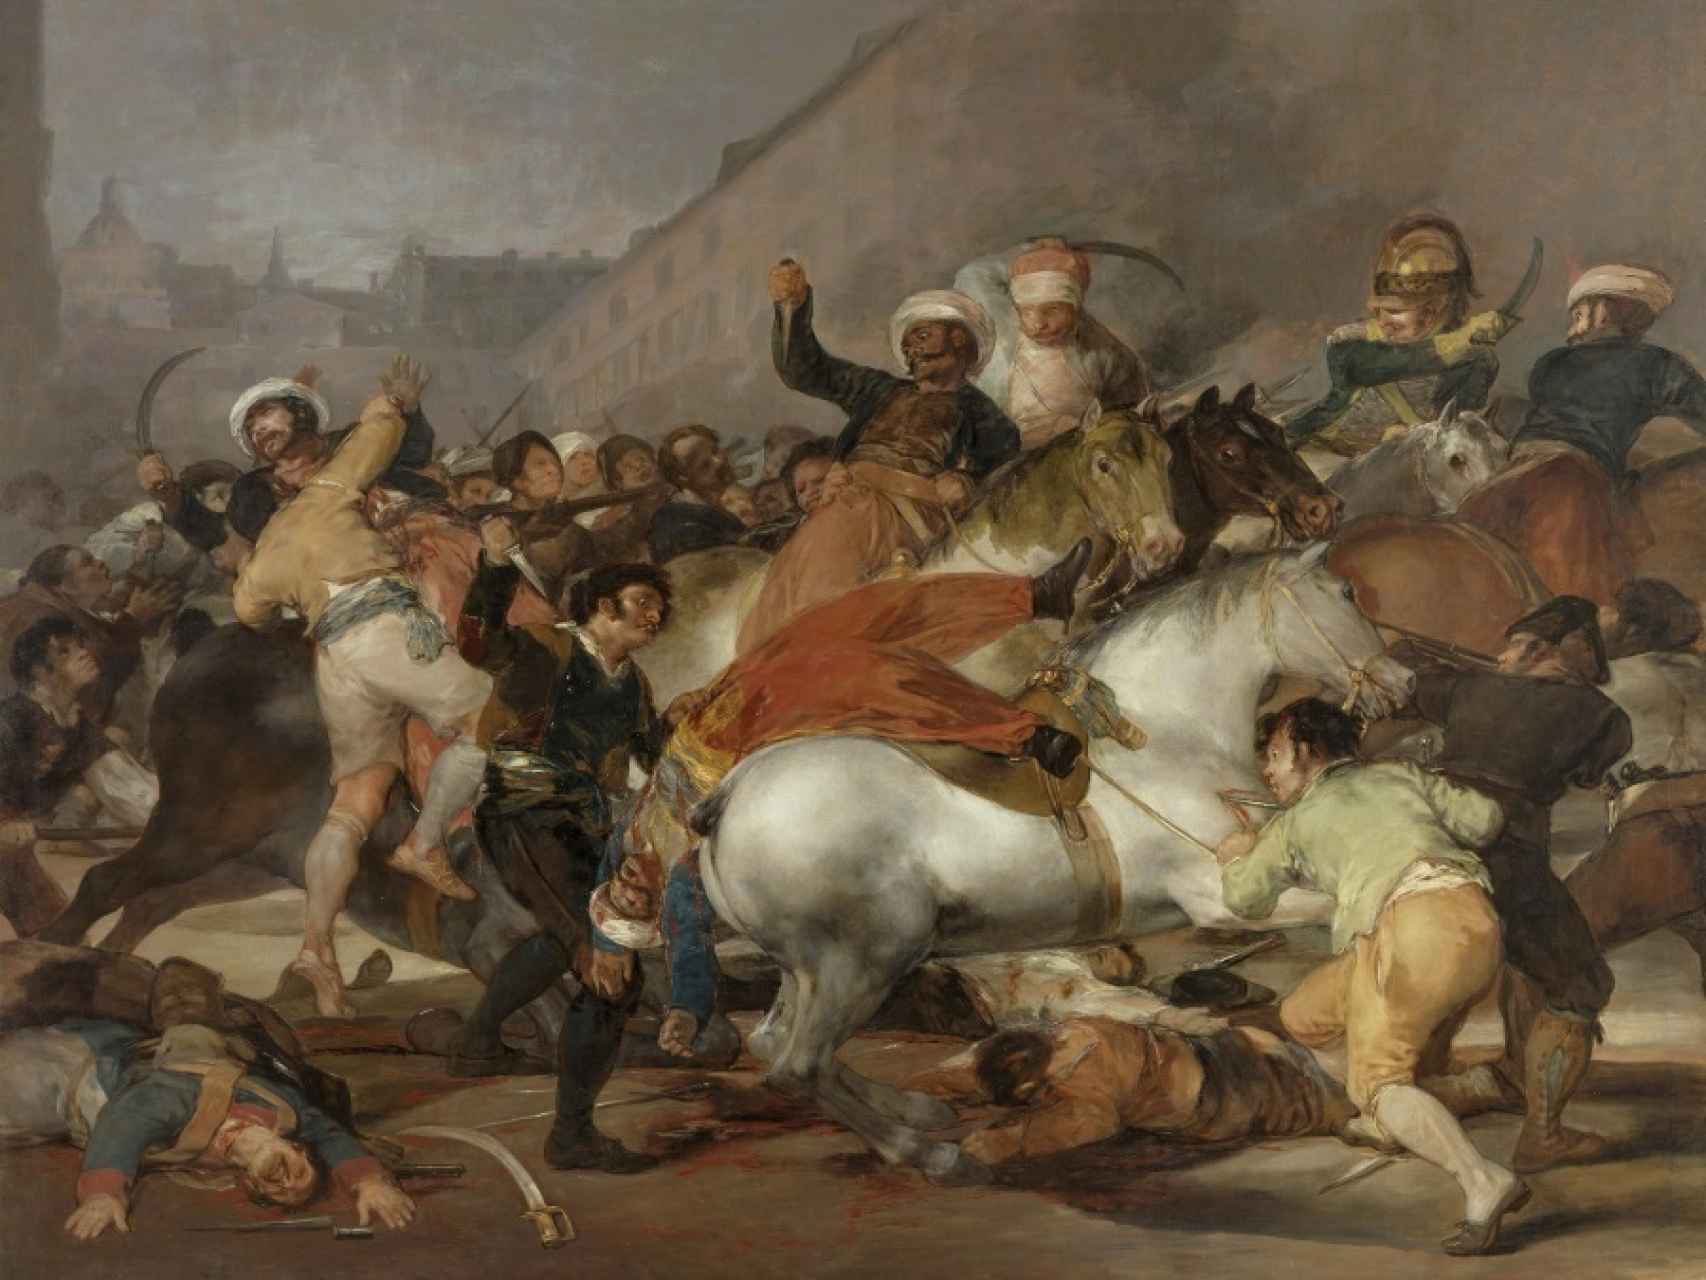 La lucha de los Mamelucos, por Francisco de Goya.